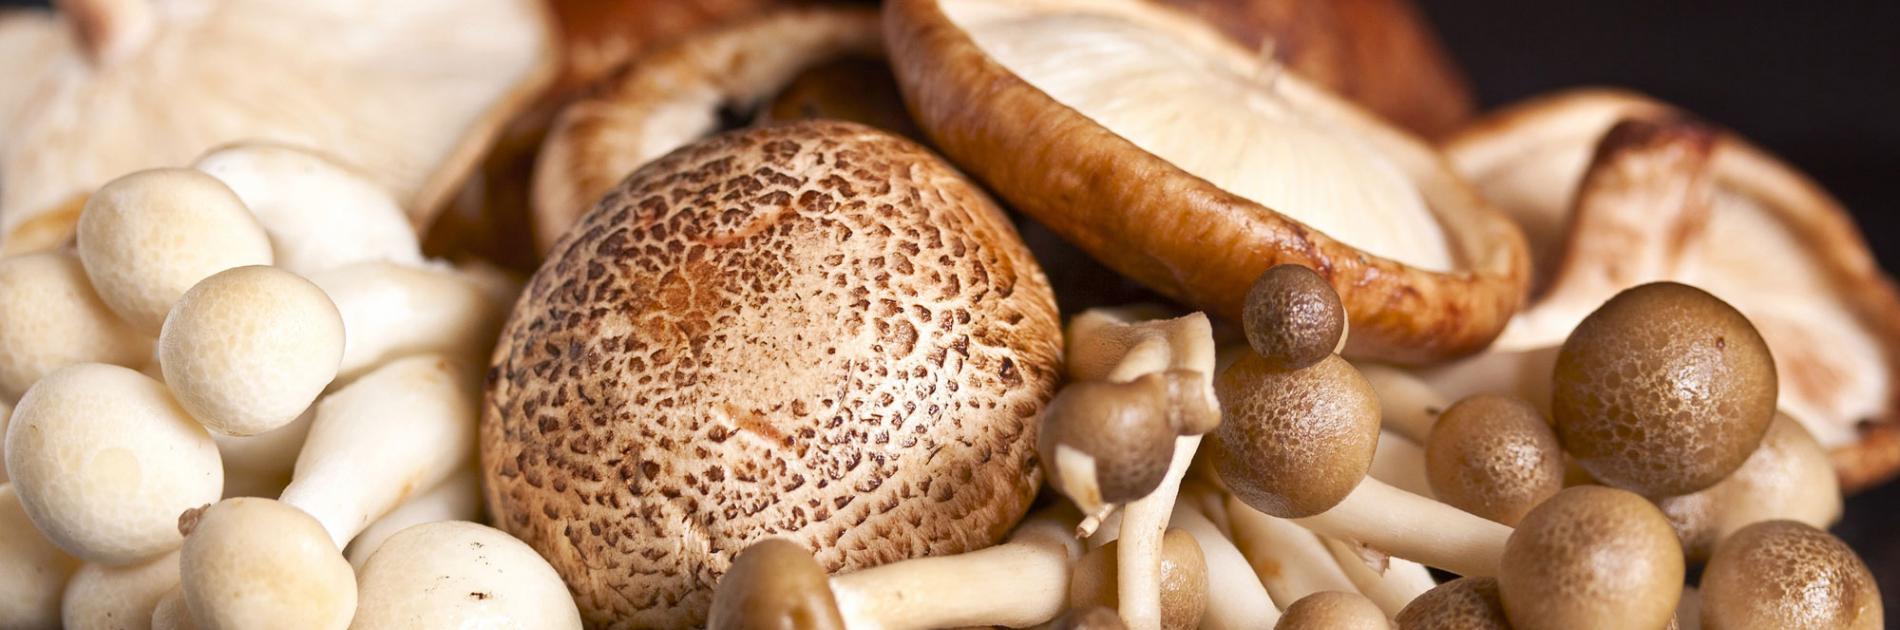 Chestnut Royale (beech root) mushroom